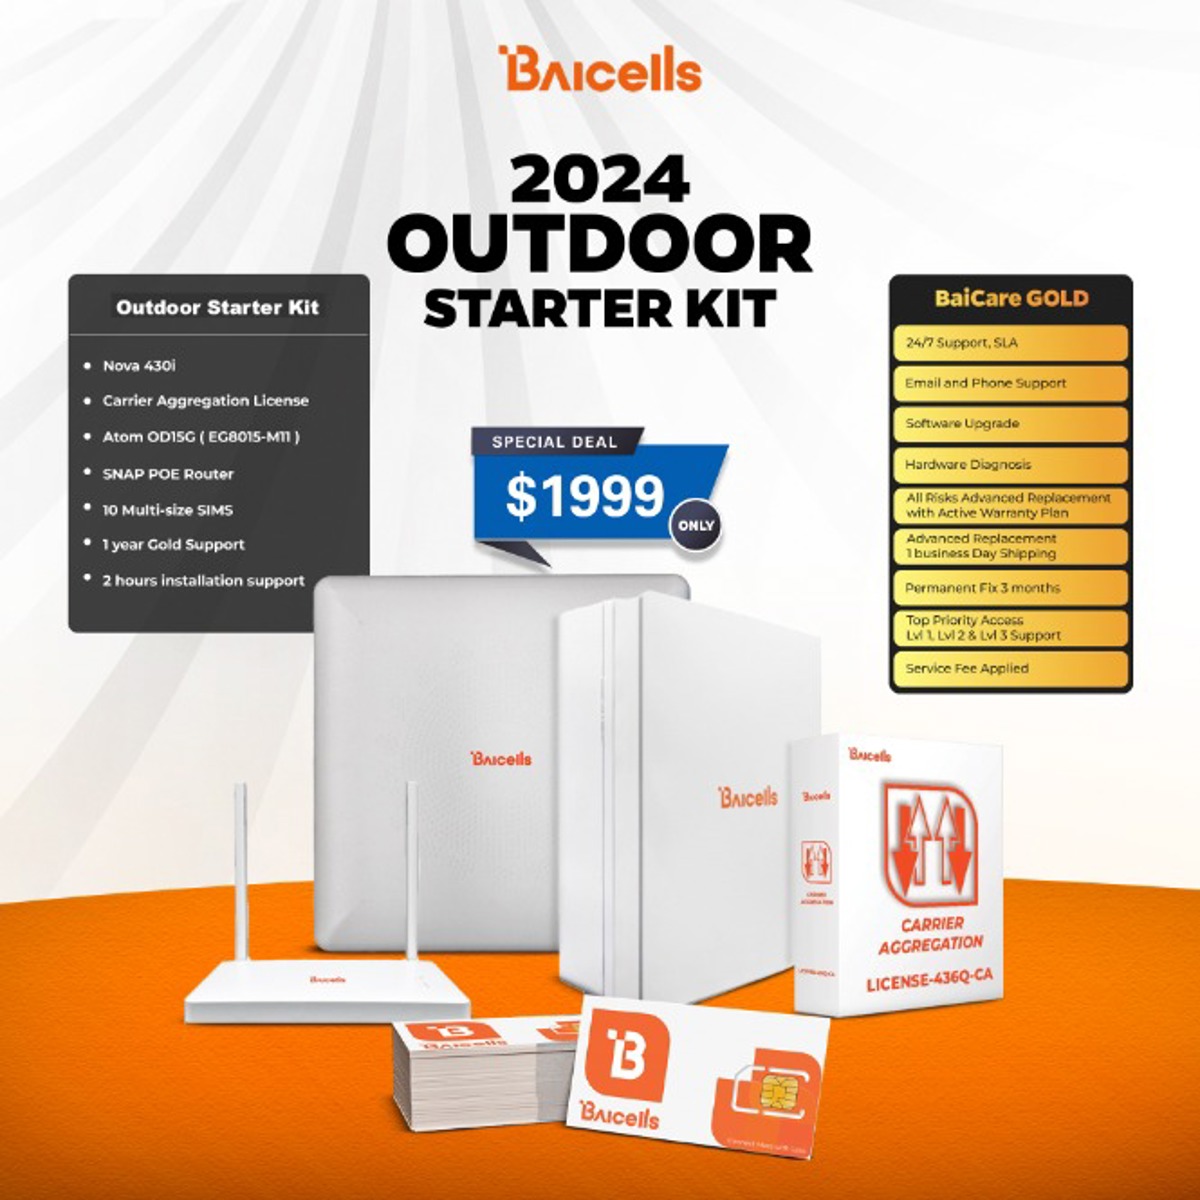 Baicells Outdoor Starter Kit 2024